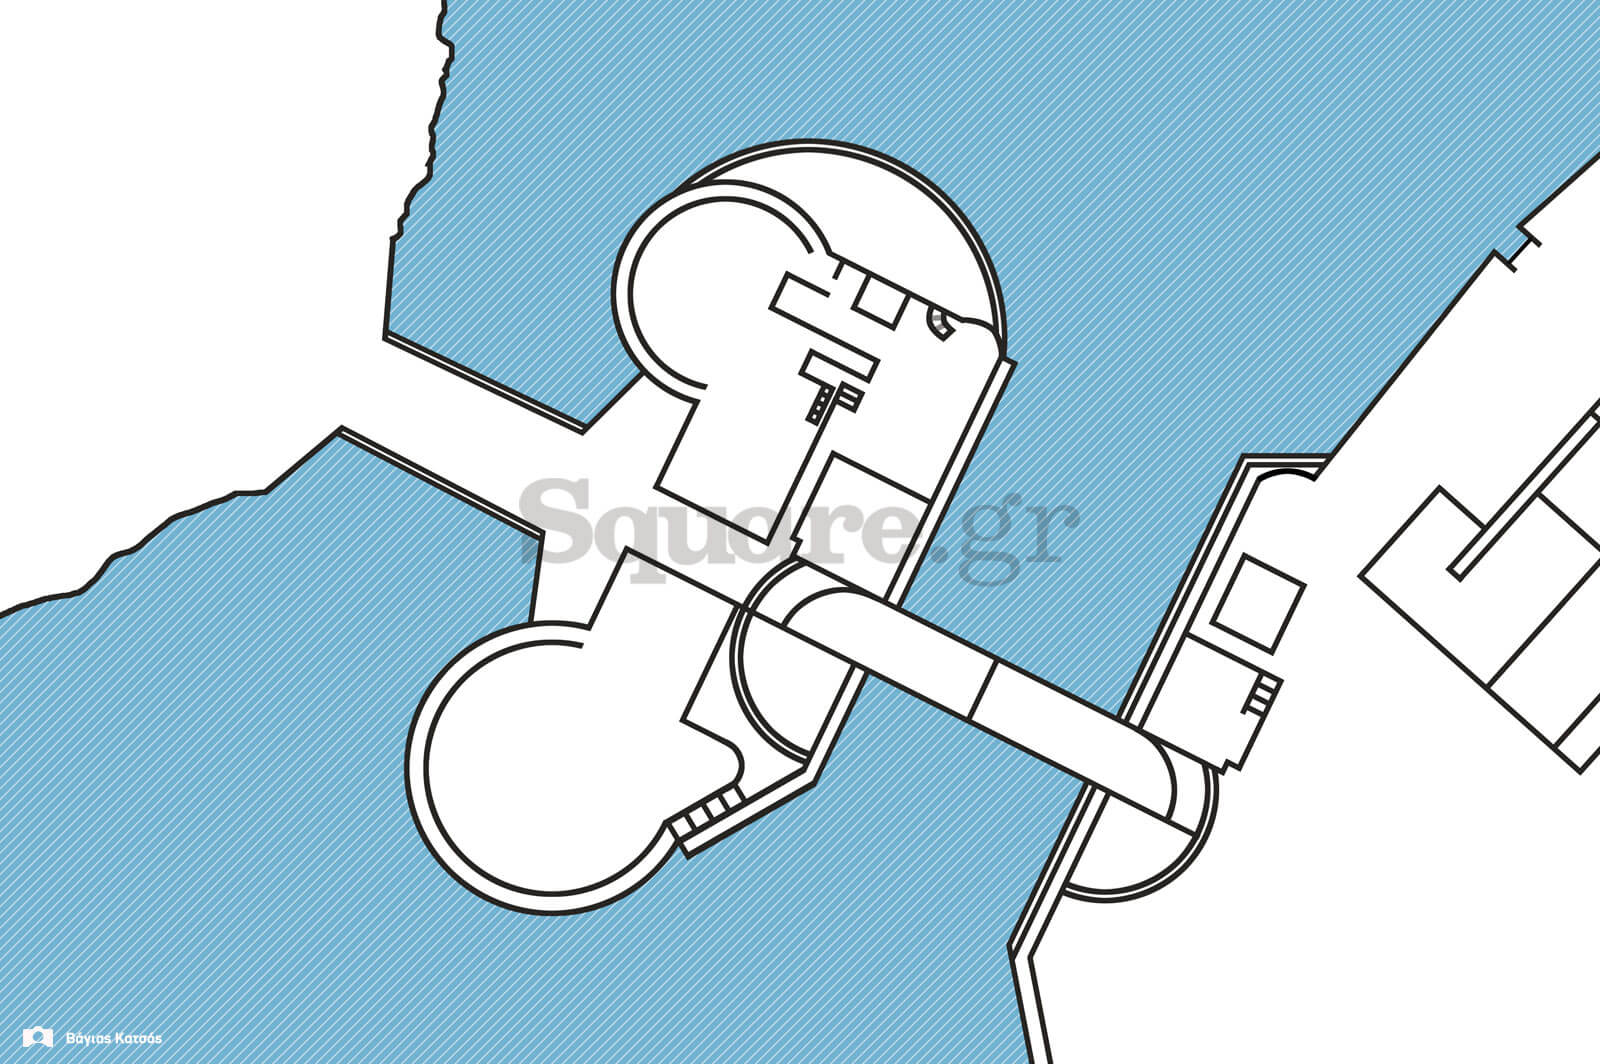 16-Κάτοψη-κάστρου-Ευρίπου-και-εκατέρωθεν-Οθωνικών-γεφυρώσεων,-βασισμένος-σε-βυθομετρικό-χάρτη-του-ναυάρχου-Αρθούρου-Μένσελ,-του-1860